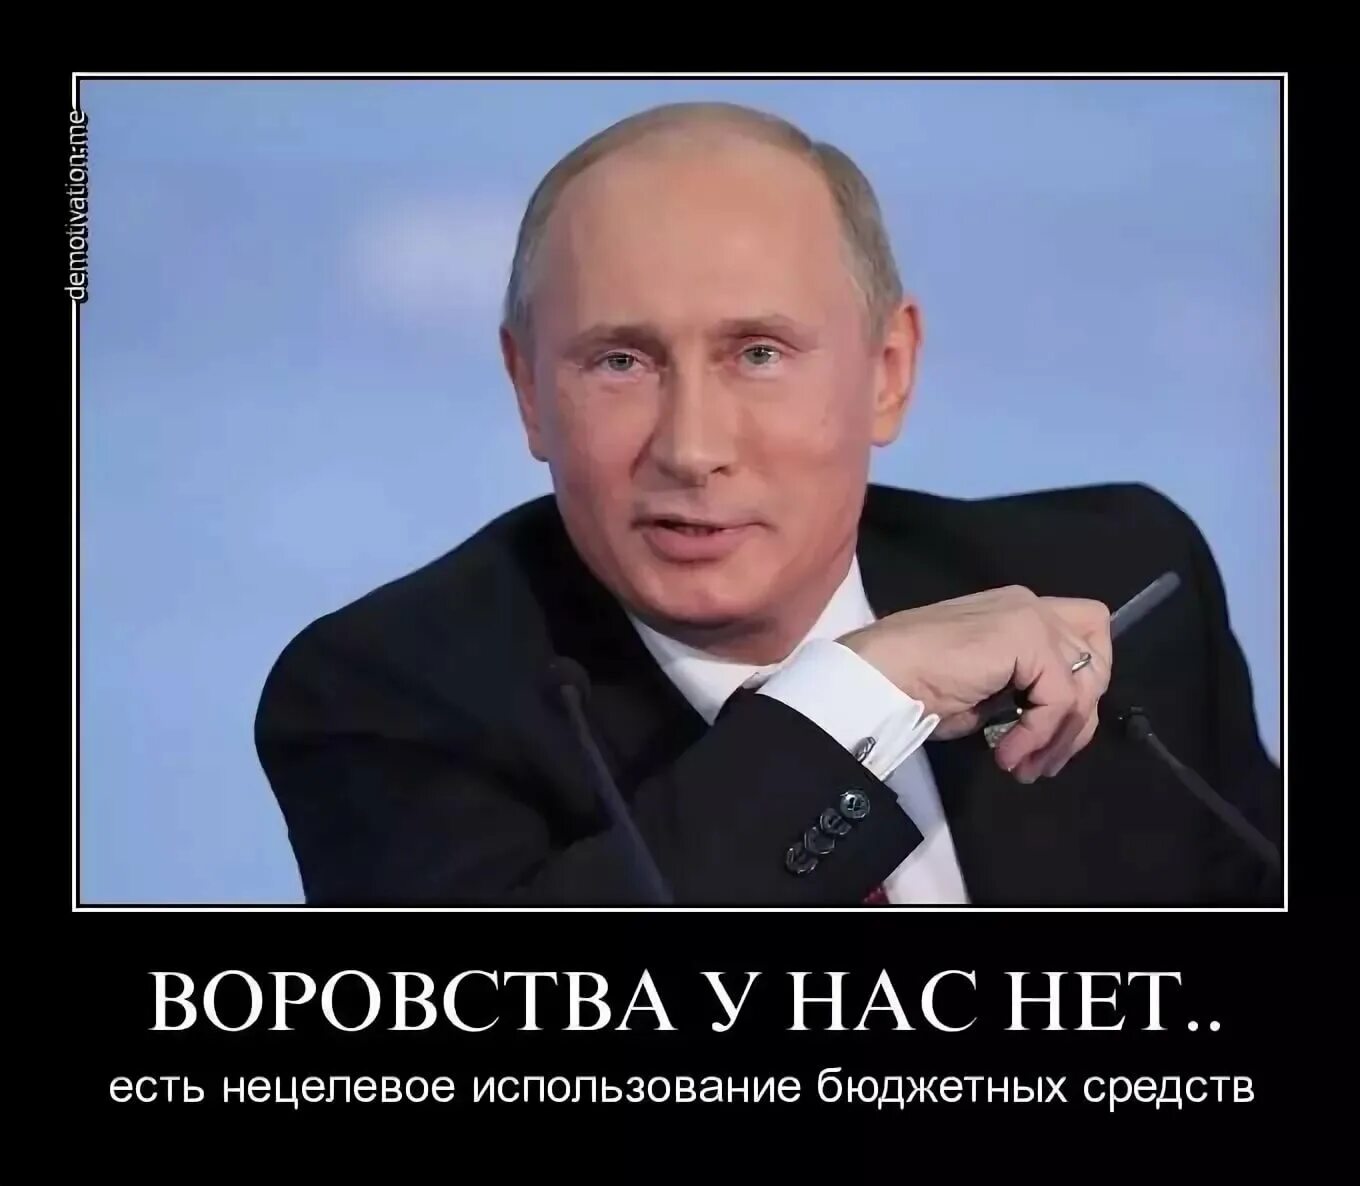 Жить россия будет по новому. В России воруют. Демотиваторы против Путина. Мемы про Путина.